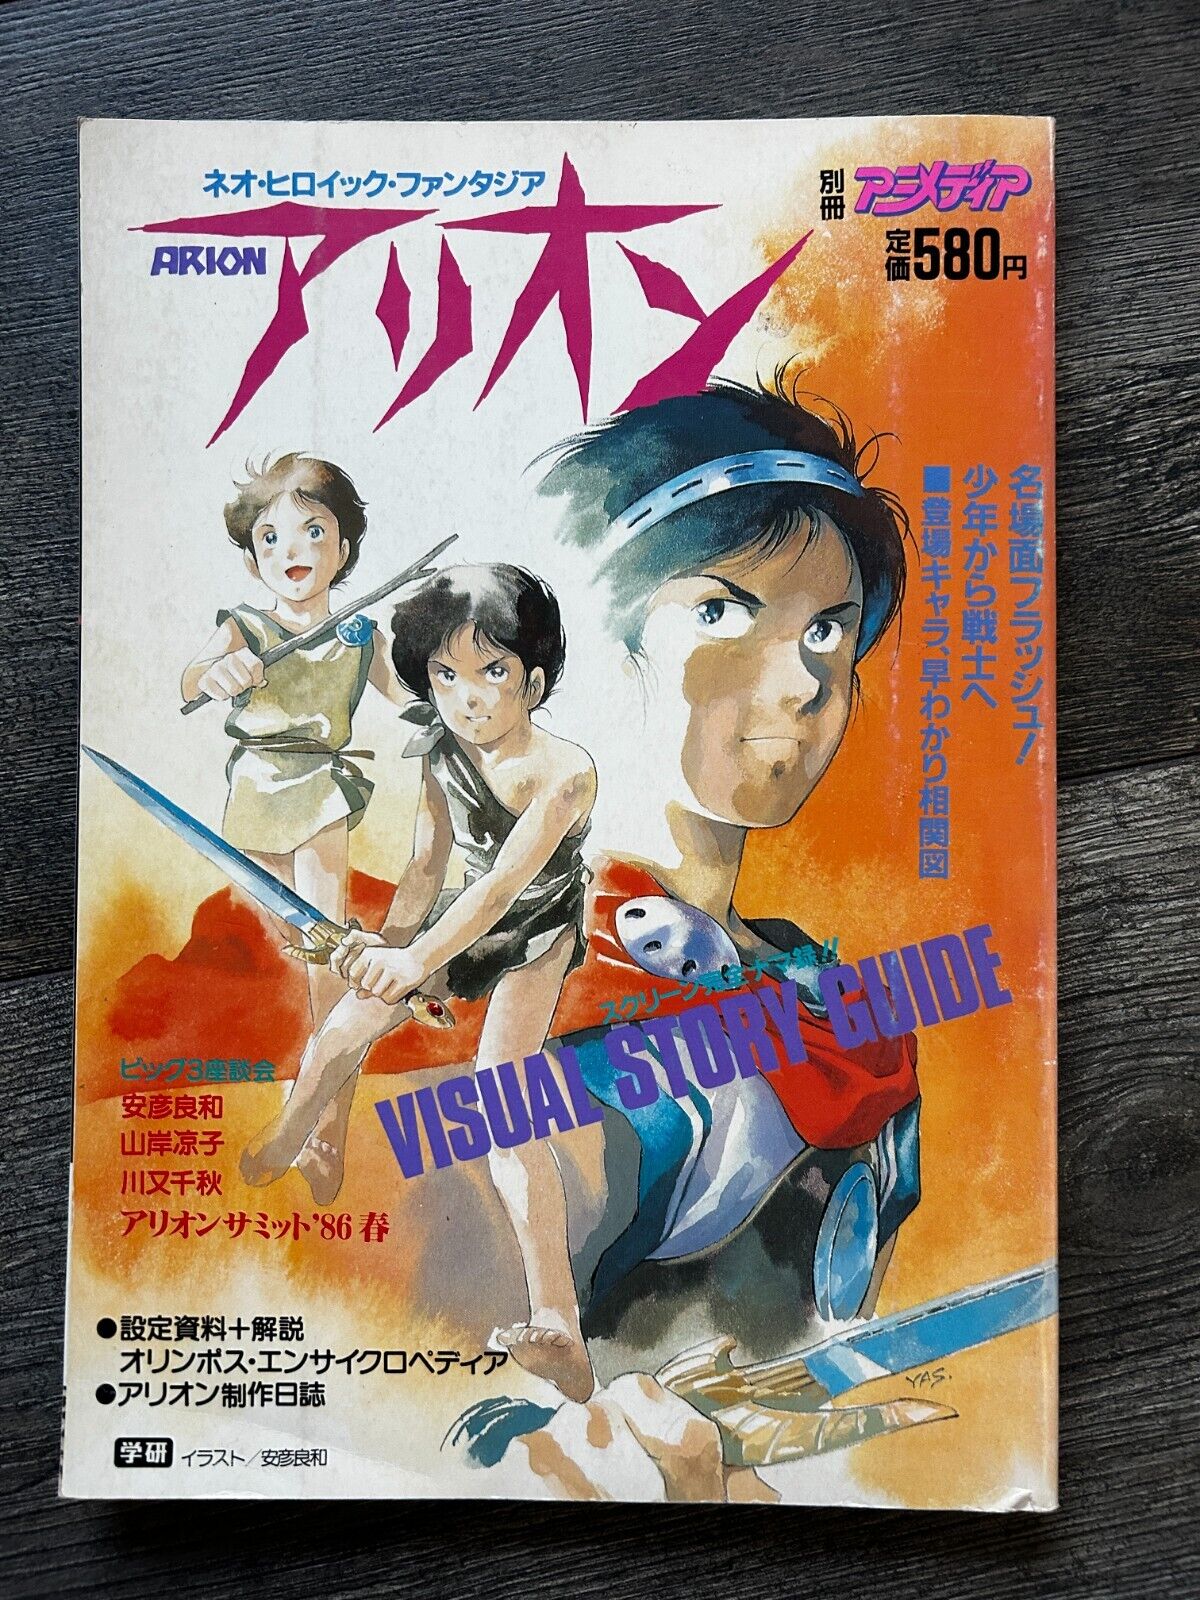 Gakushu Kenkyusha Bessatsu Animedia ARION Visual Story Guide Mook Anime Manga